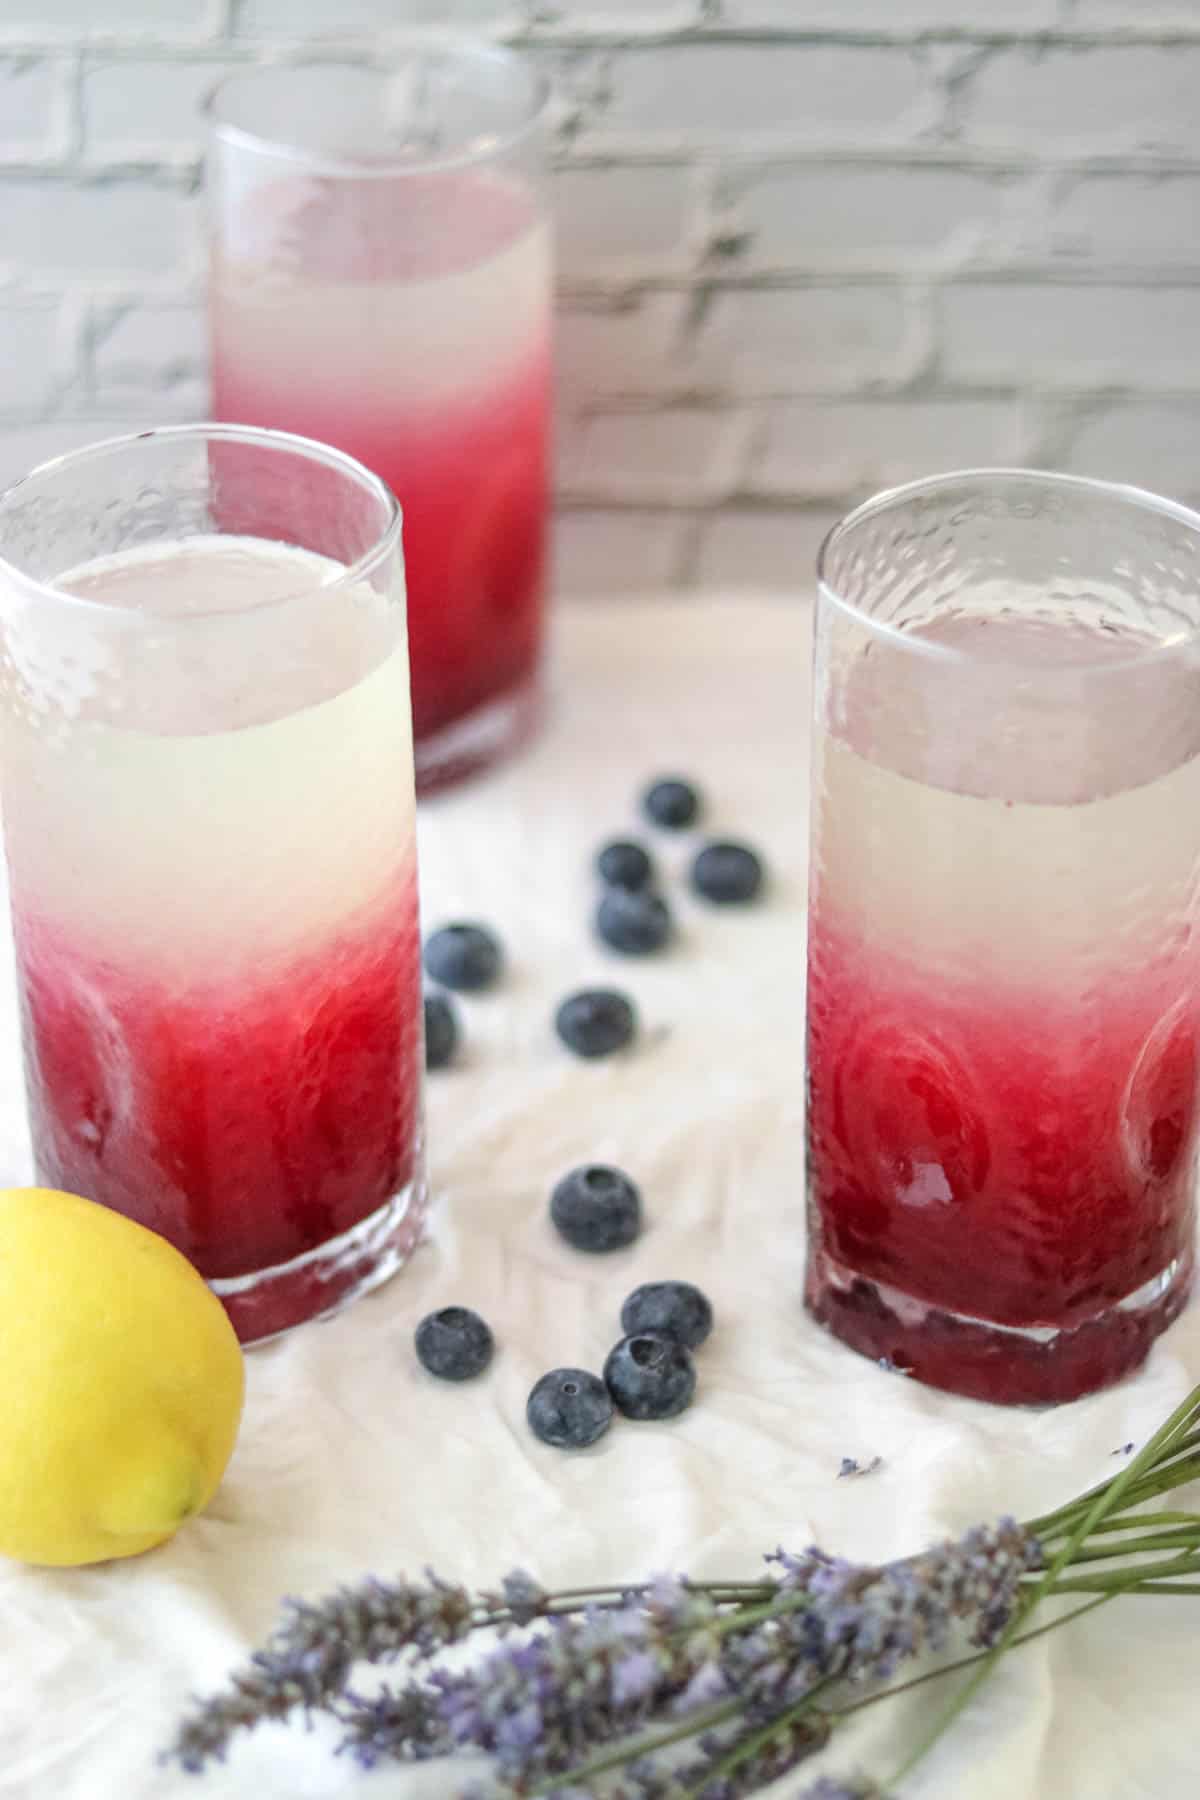 sprigs of lavender next to glasses of lemonade